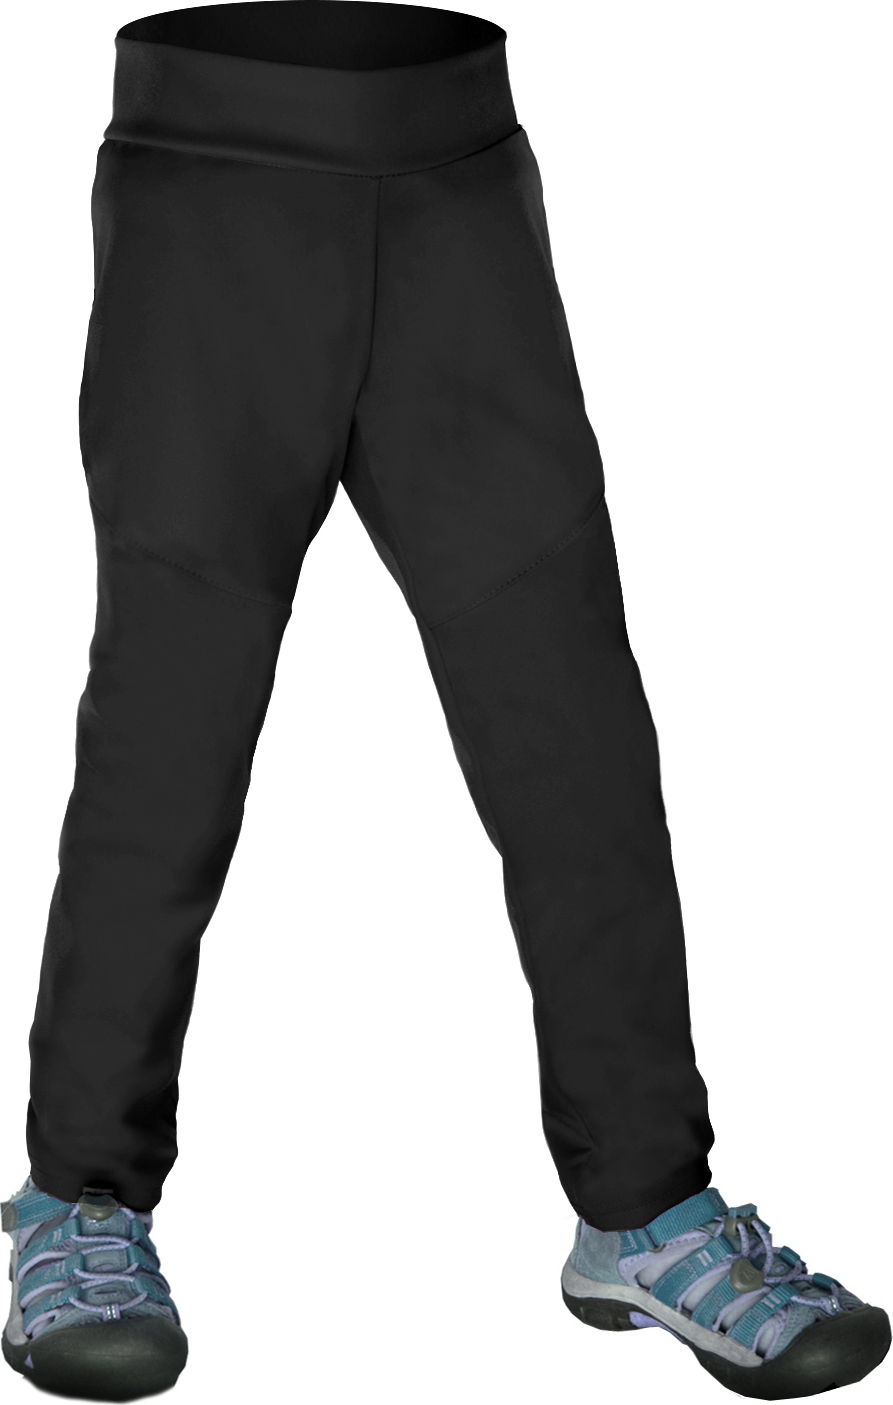 Dětské softshellové kalhoty bez zateplení UNUO Sporty pružné, Černá Velikost: 98/104